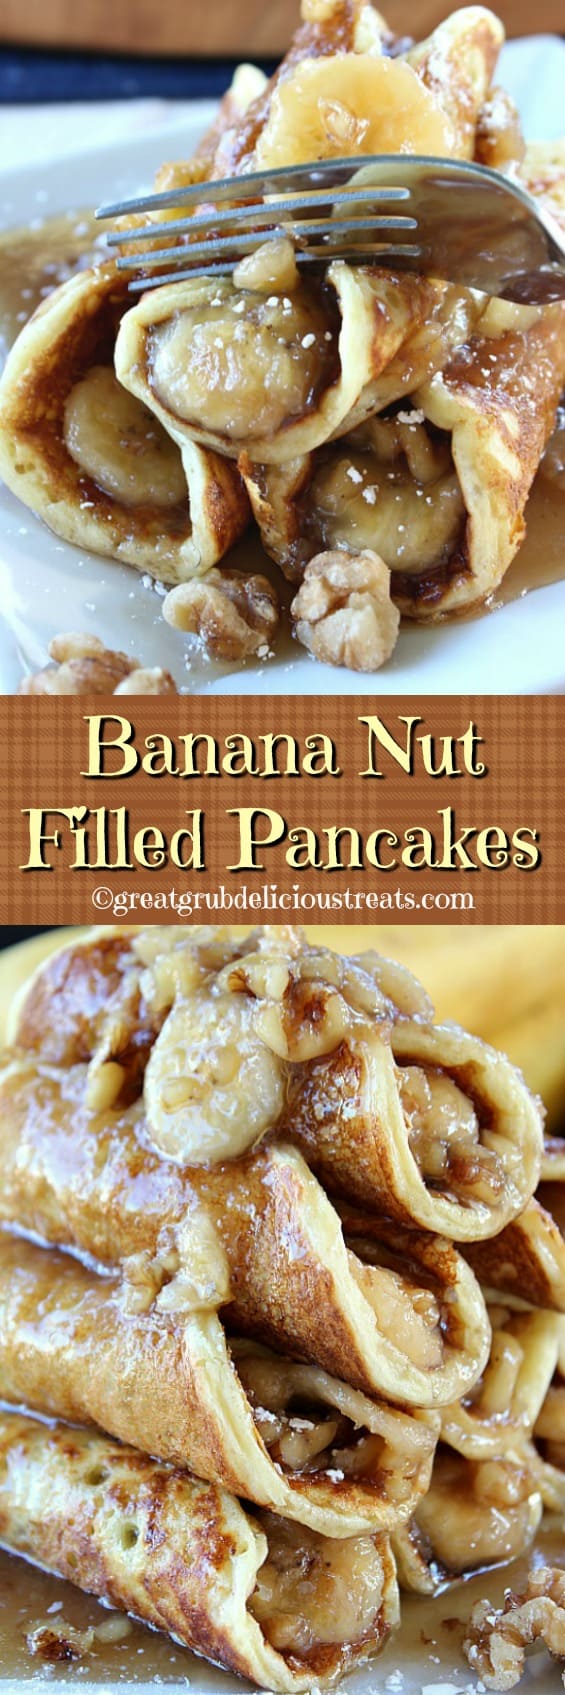 Banana Nut Filled Pancakes